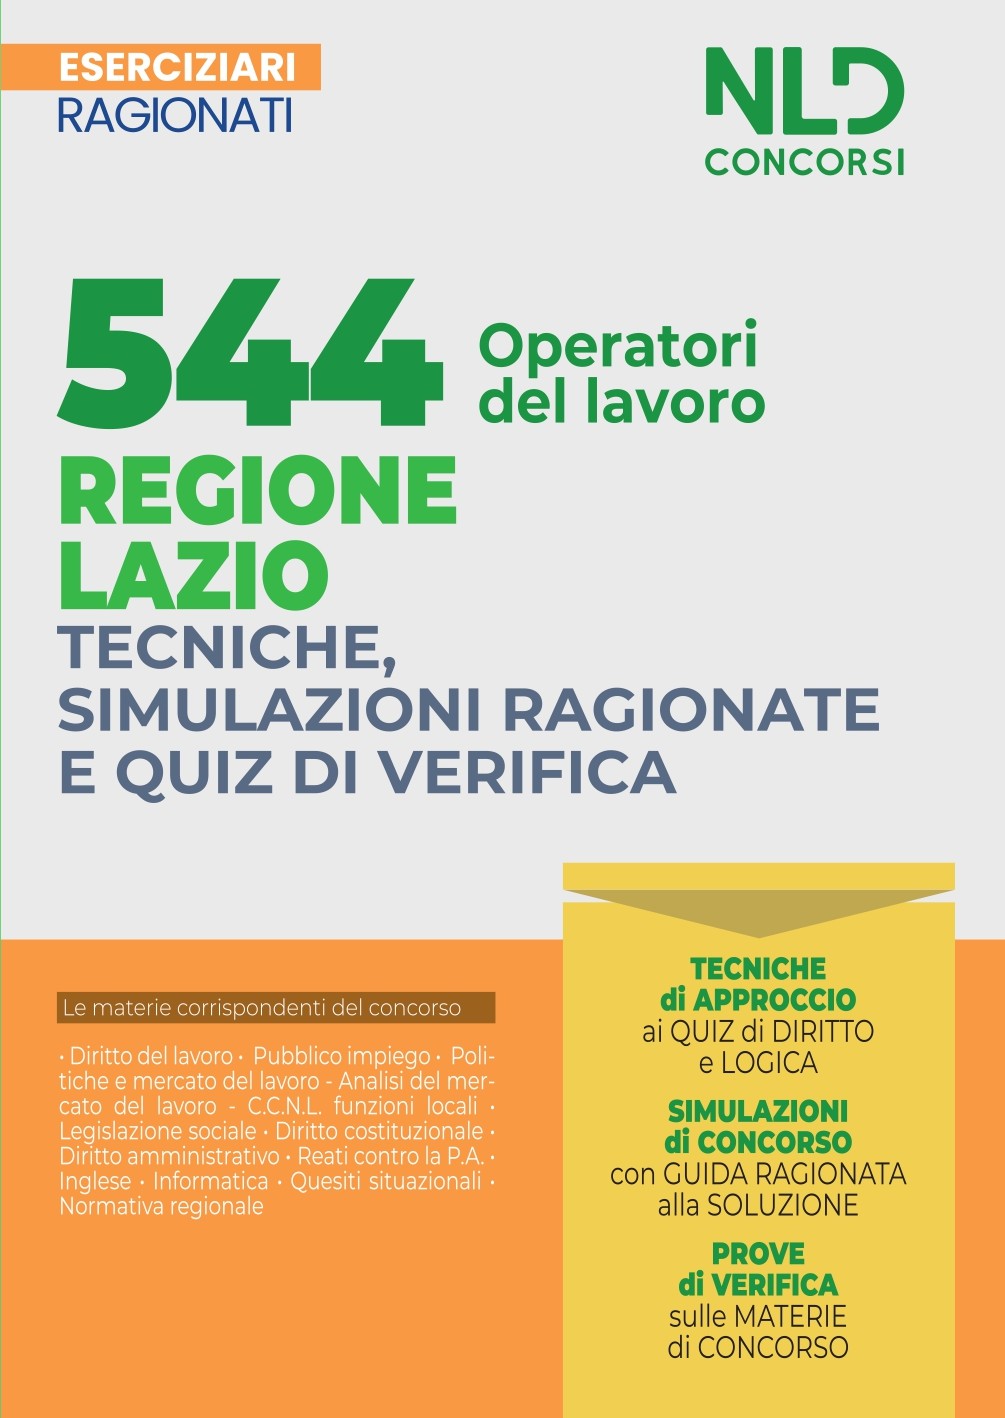  544 Operatori Del Lavoro Regione Lazio - Eserciziario Ragionato